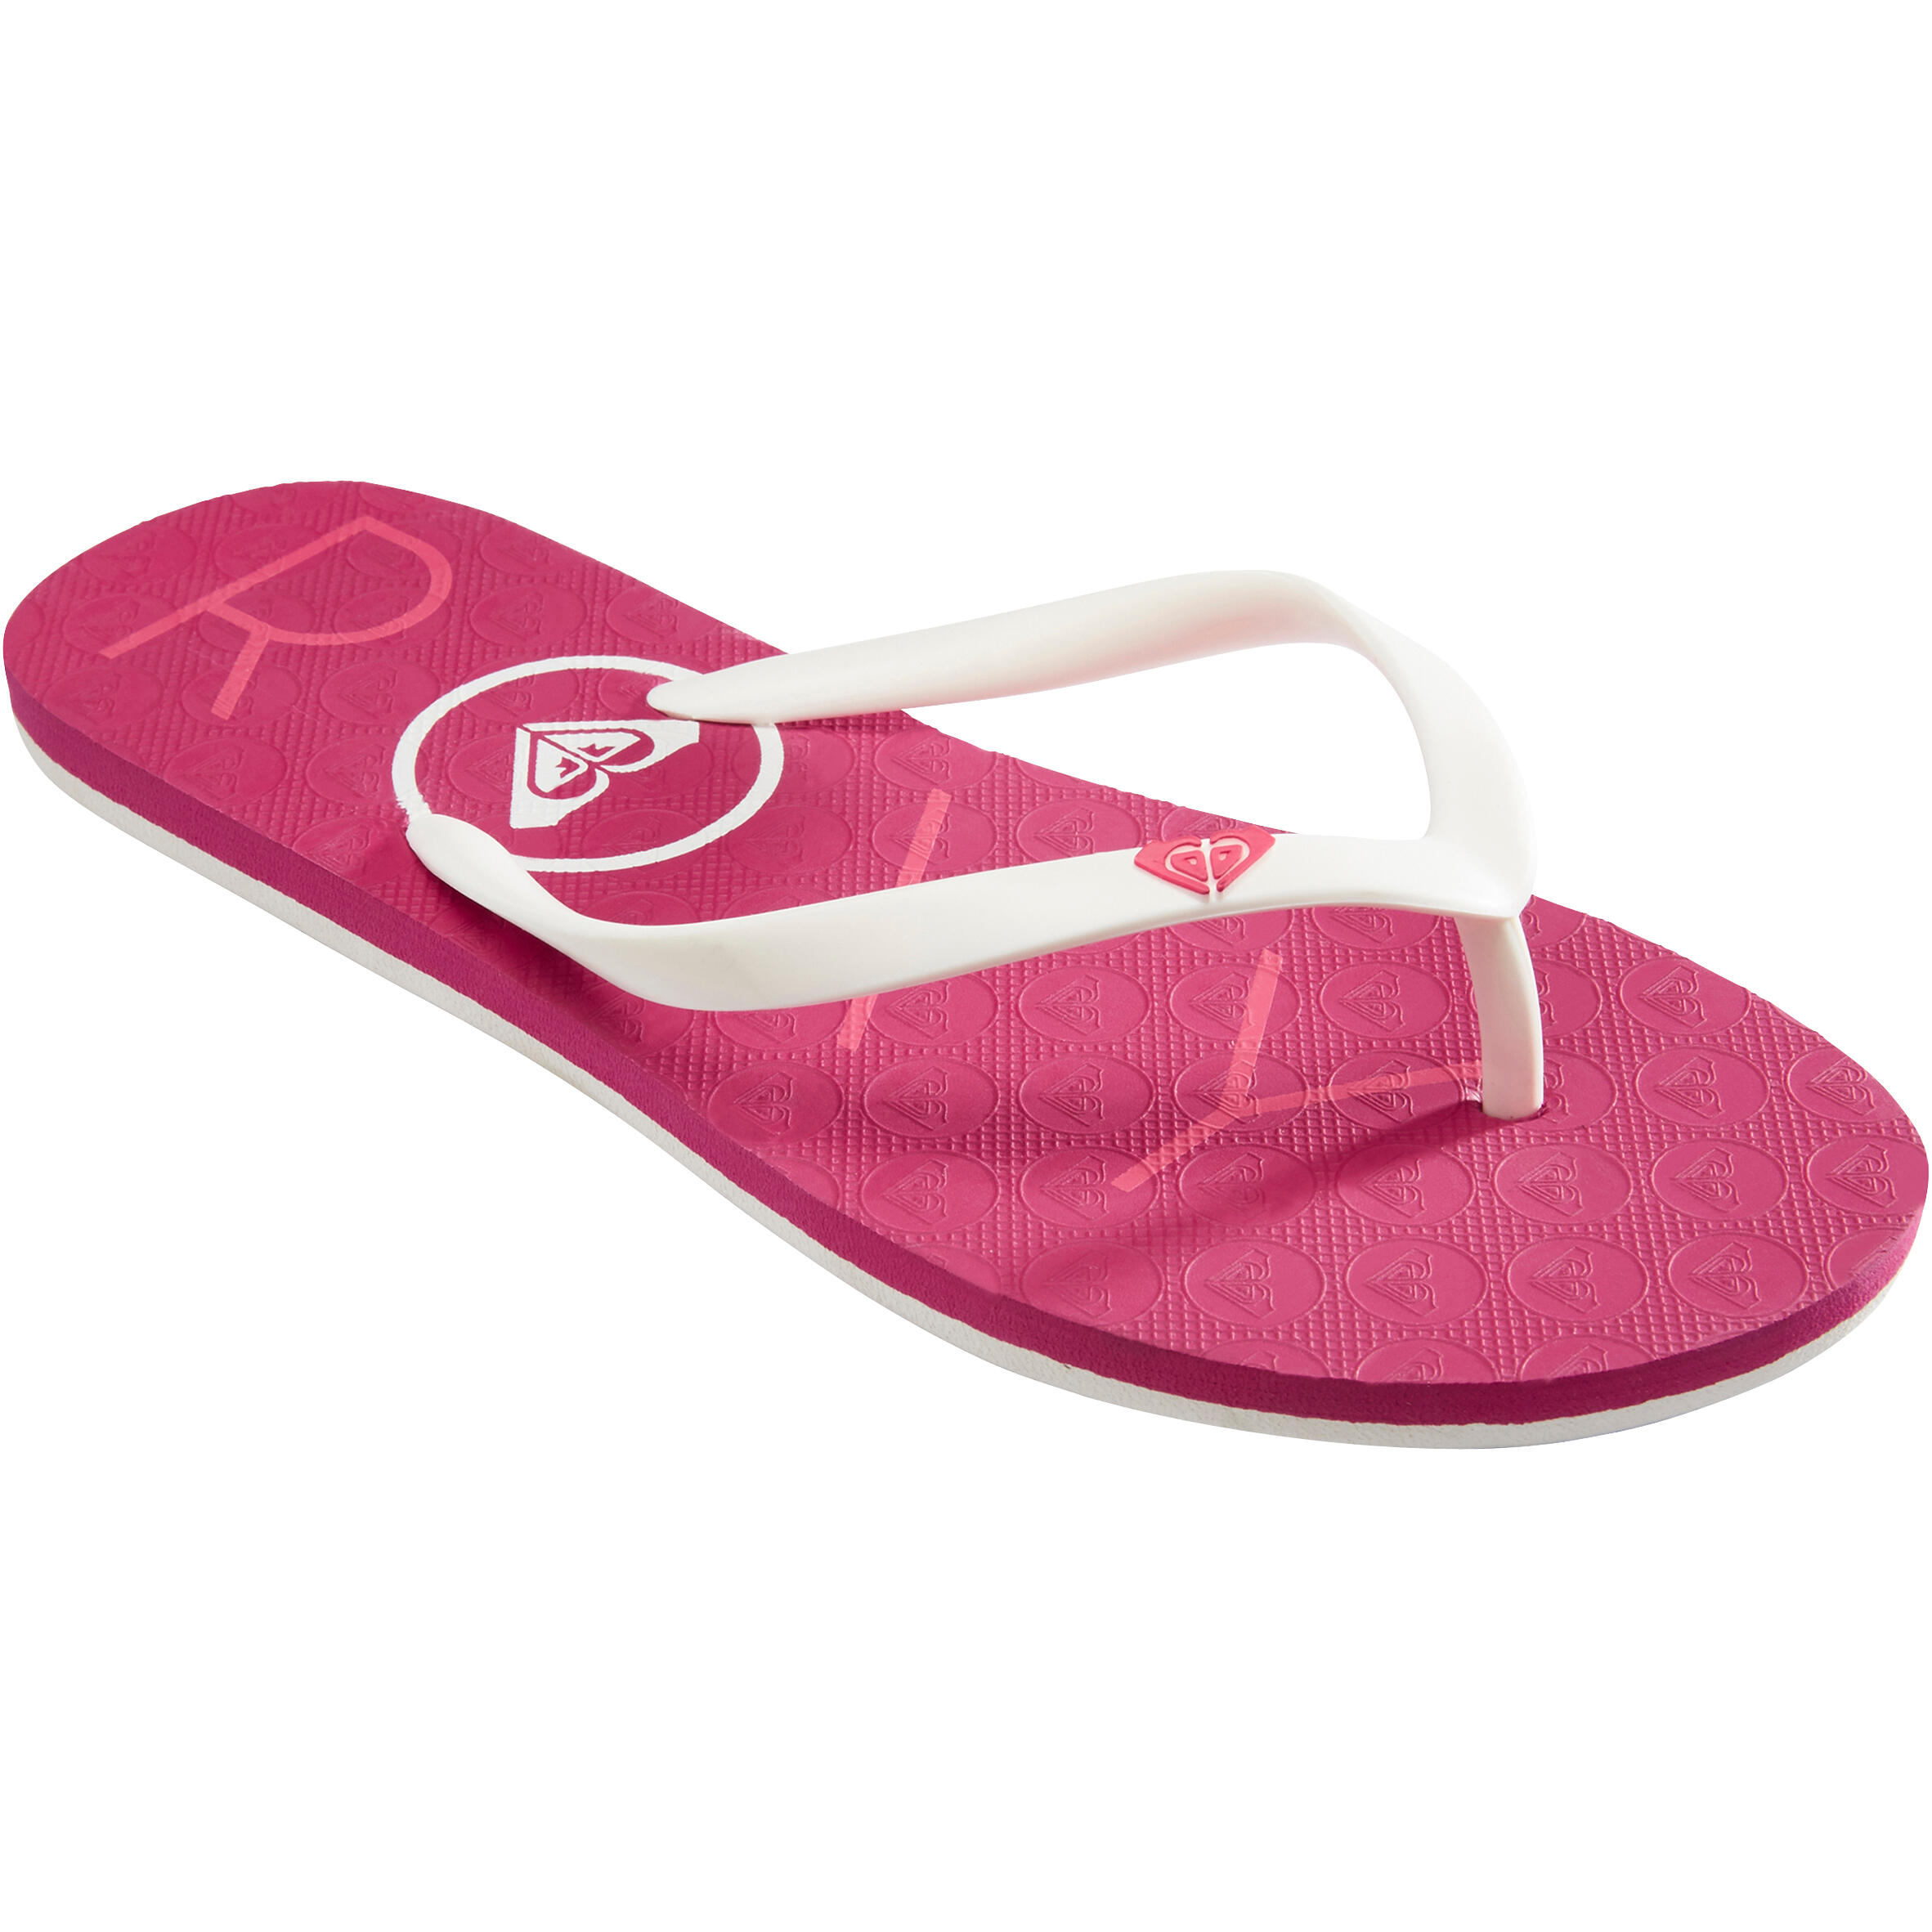 ROXY Women’s Flip-flops SEA Roxy pink